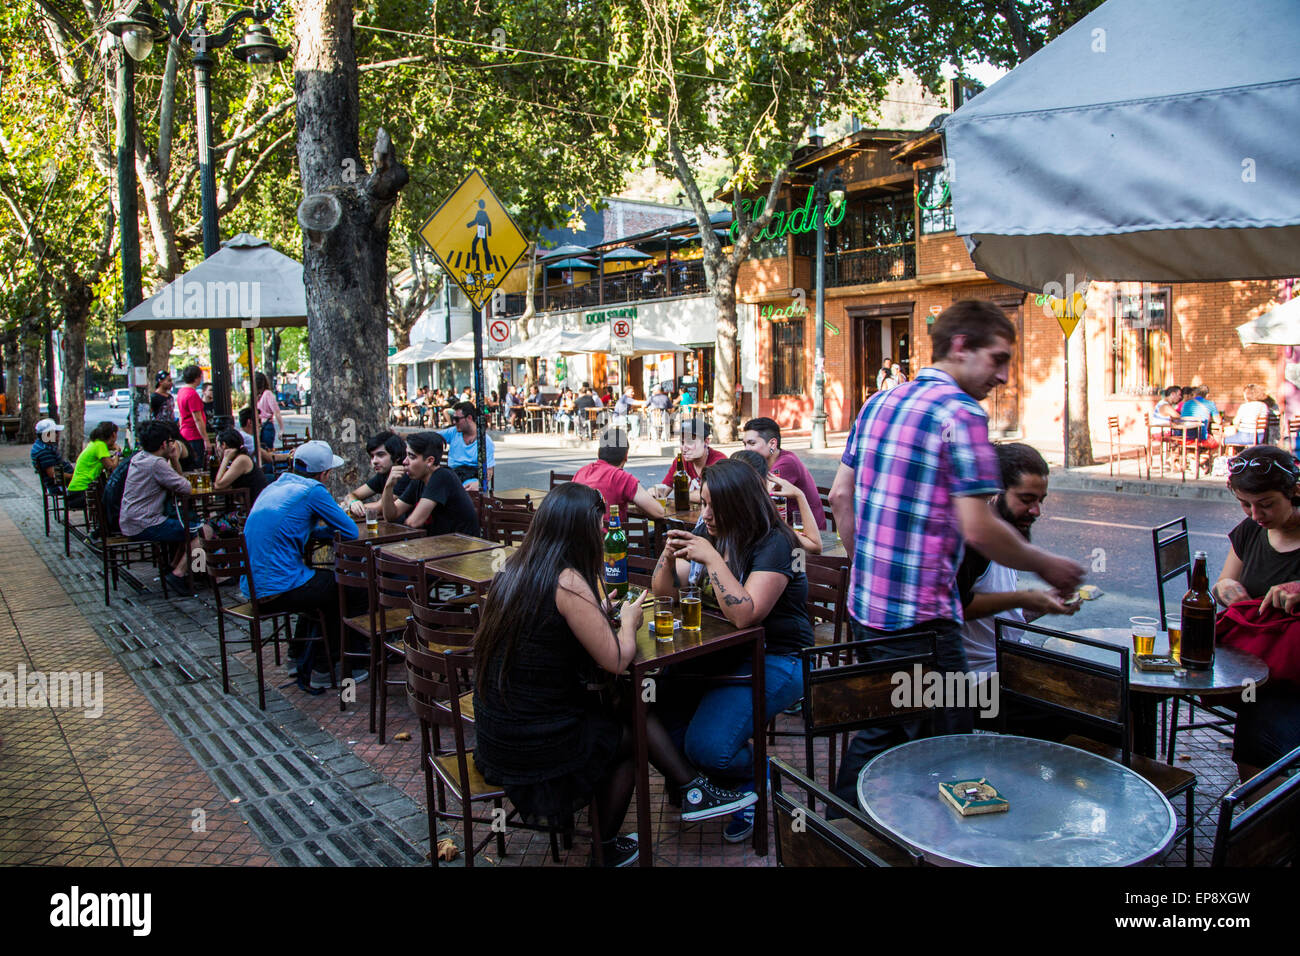 outdoor cafes, Pio Nono avenue, Barrio Bellavista, Santiago, Chile Stock Photo